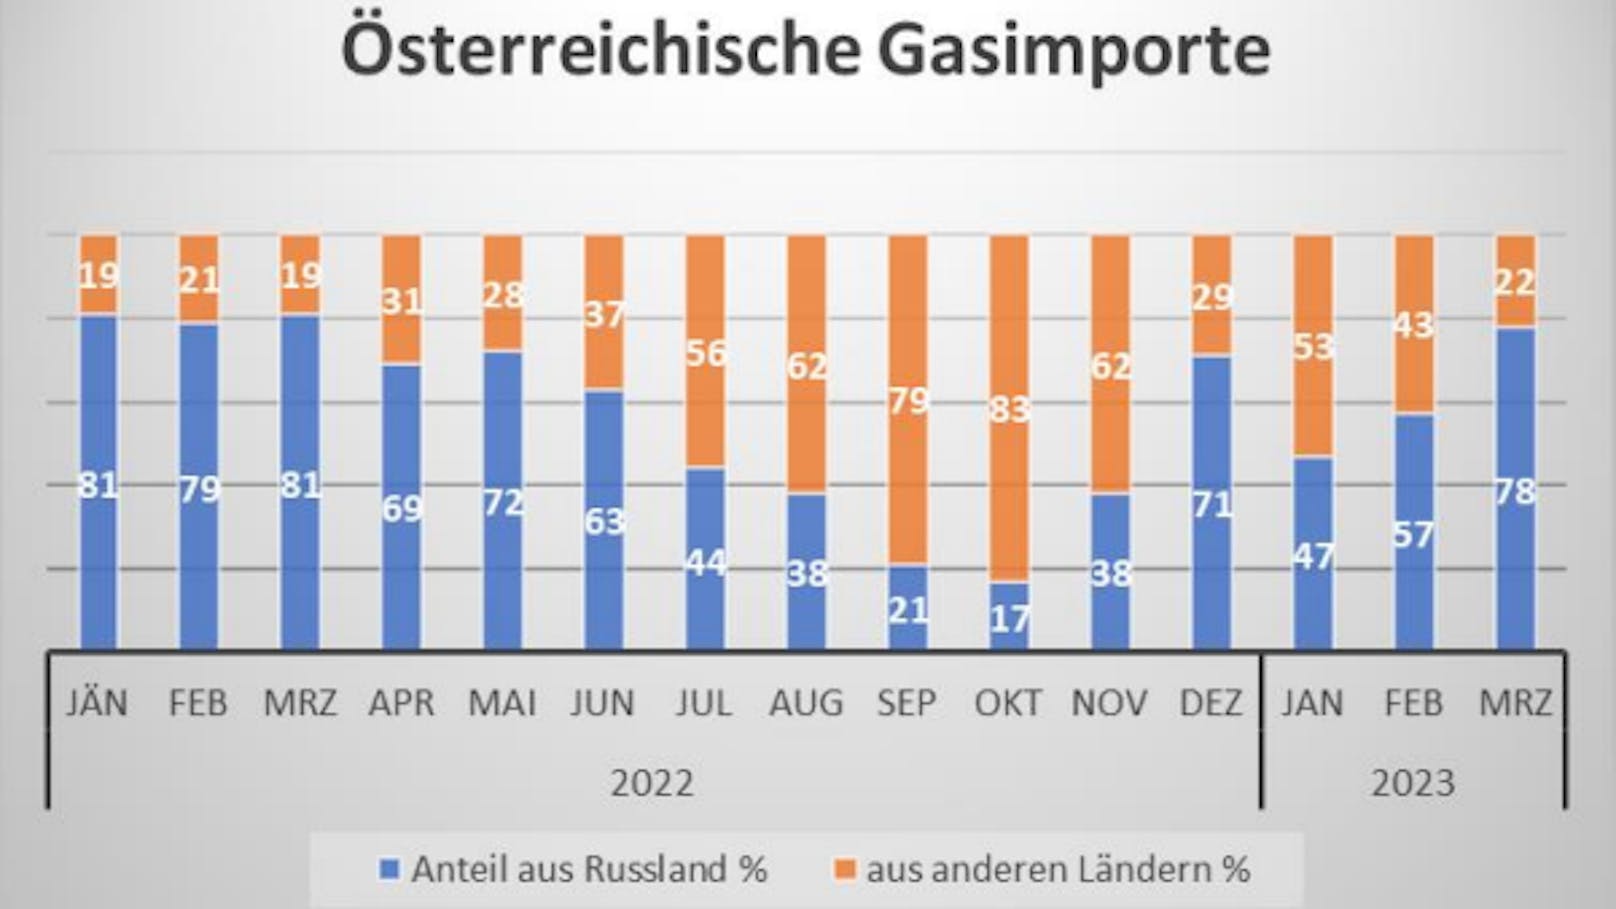 Österreichische Gasimporte